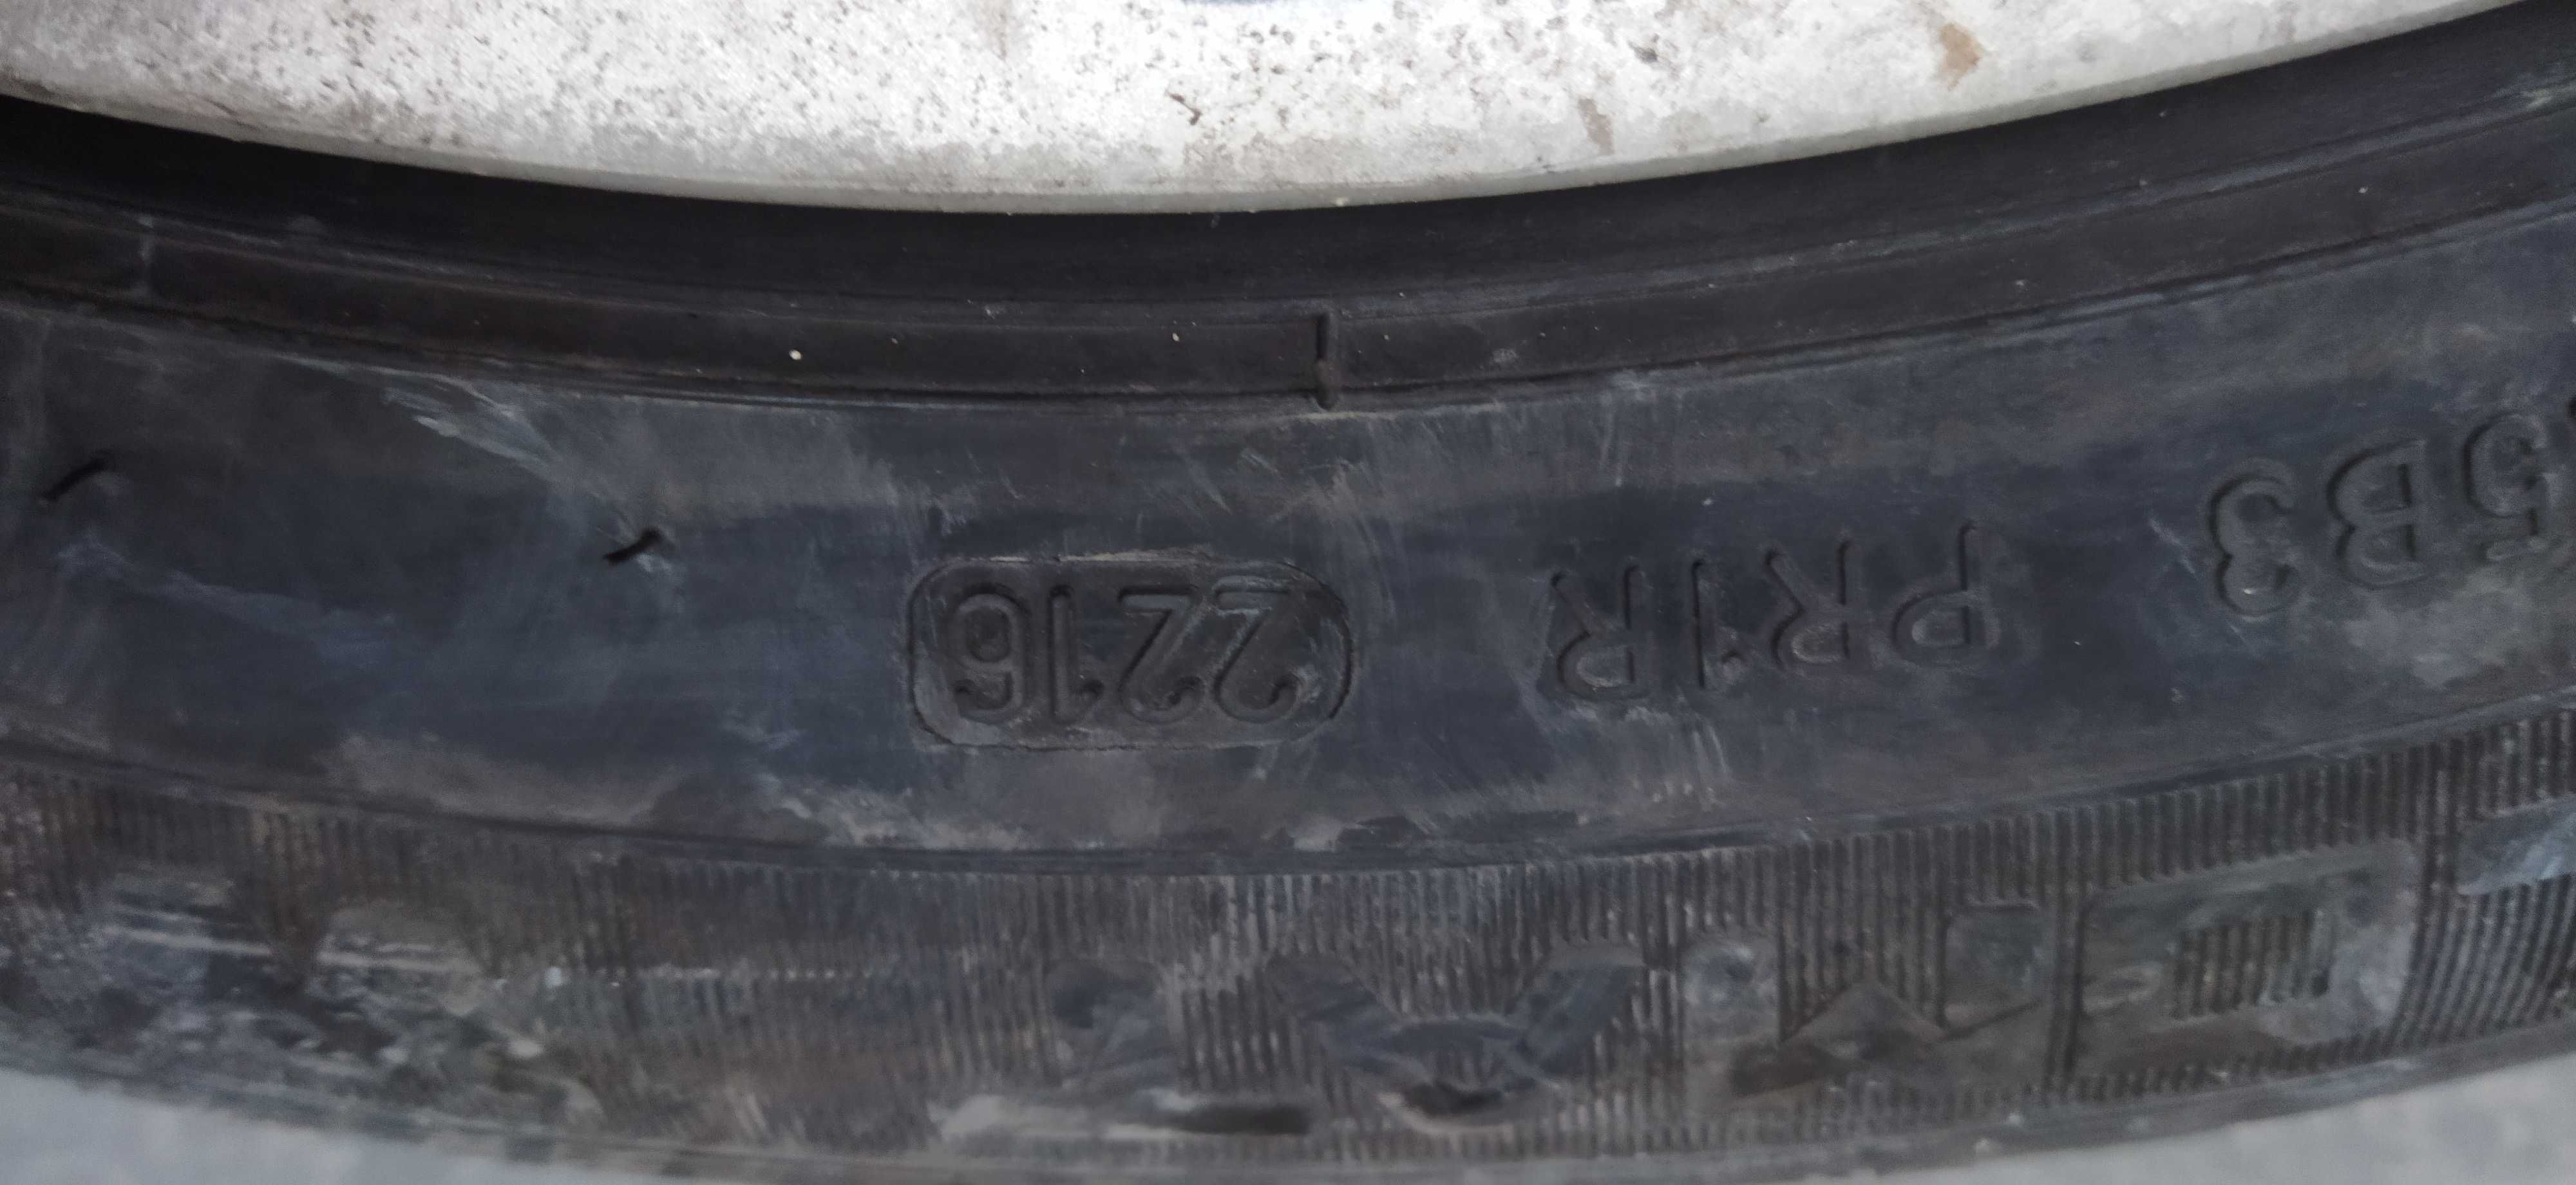 Джанти 5х120 16ки със зимни и летни гуми